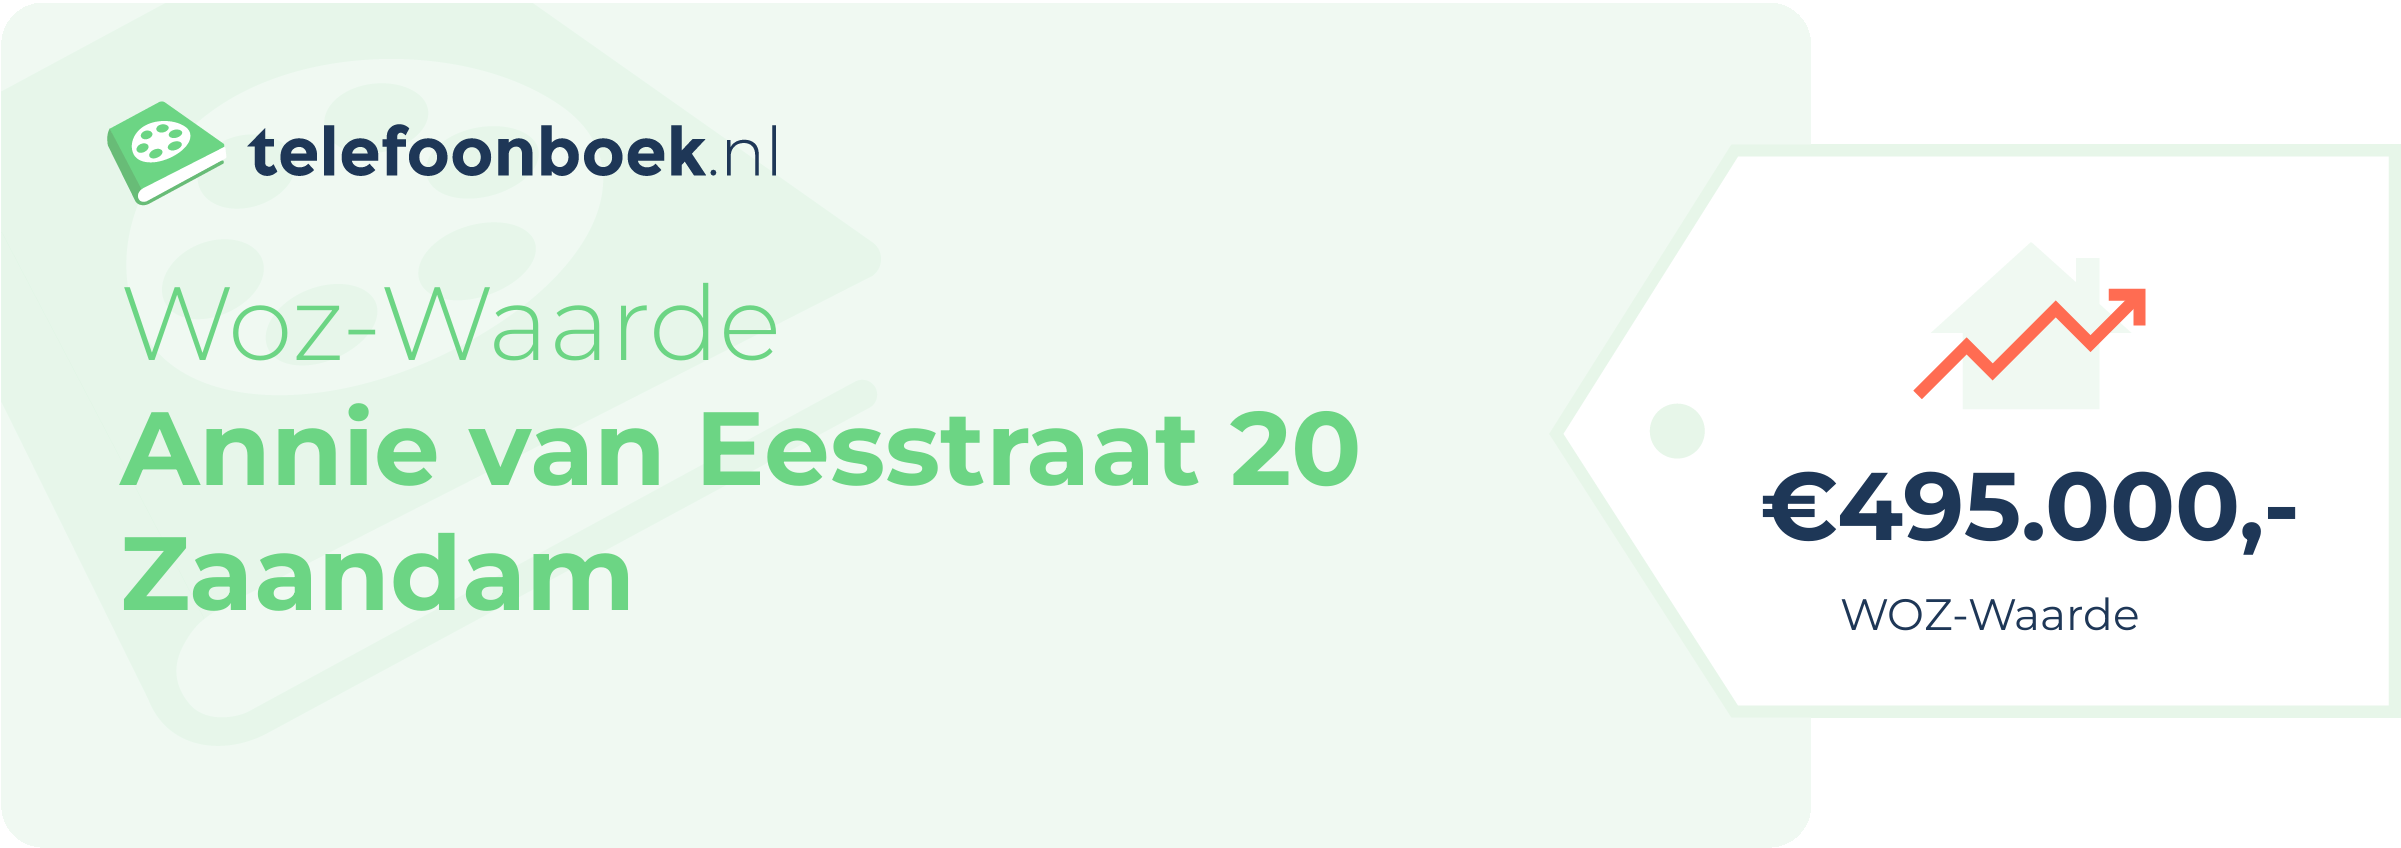 WOZ-waarde Annie Van Eesstraat 20 Zaandam